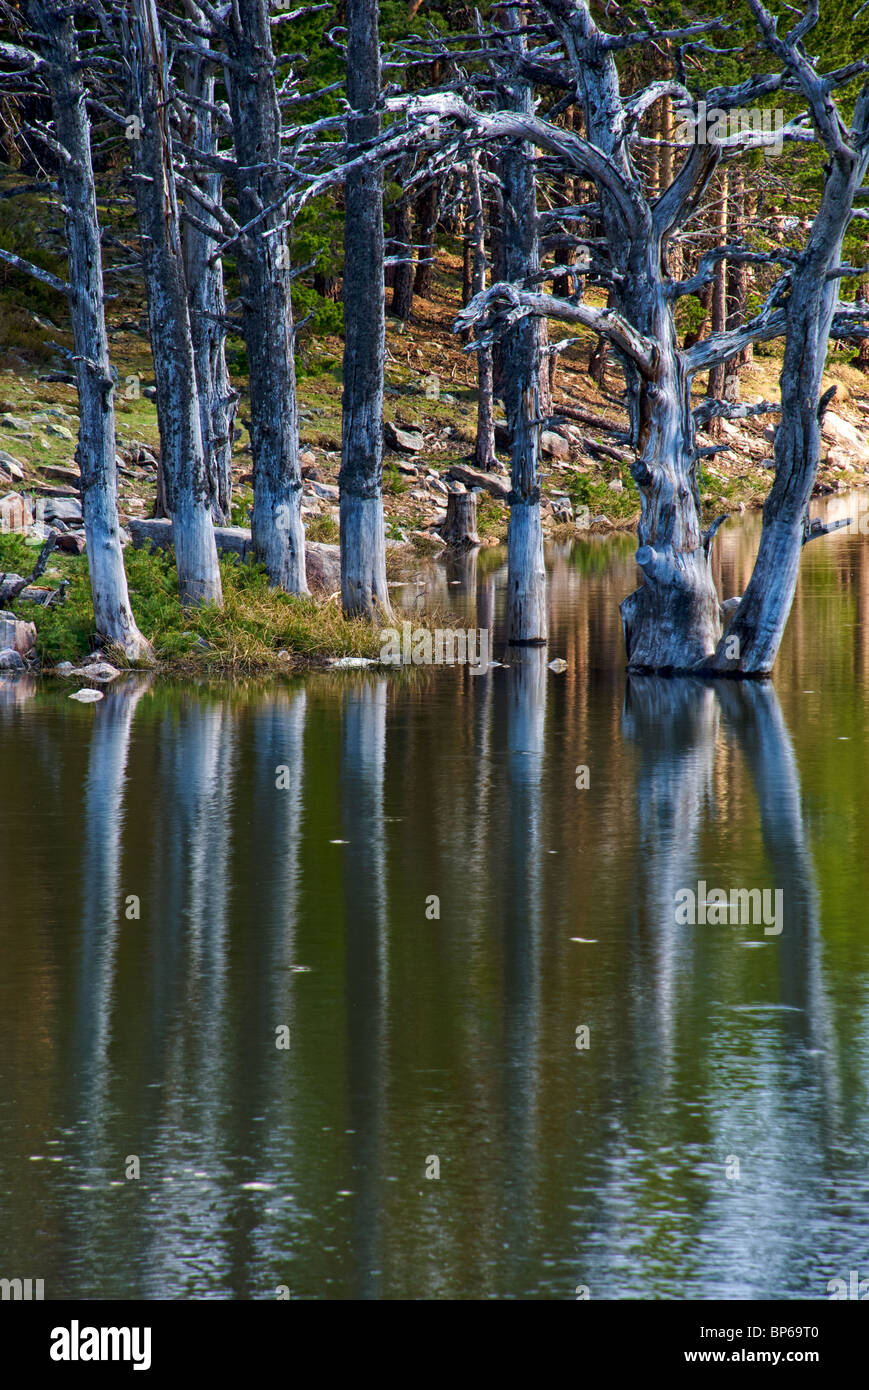 Dead Trees. Laguna de los Patos. Lagunas Glaciares de Neila Natural Park. Burgos province. Castilla y Leon. Spain. Stock Photo